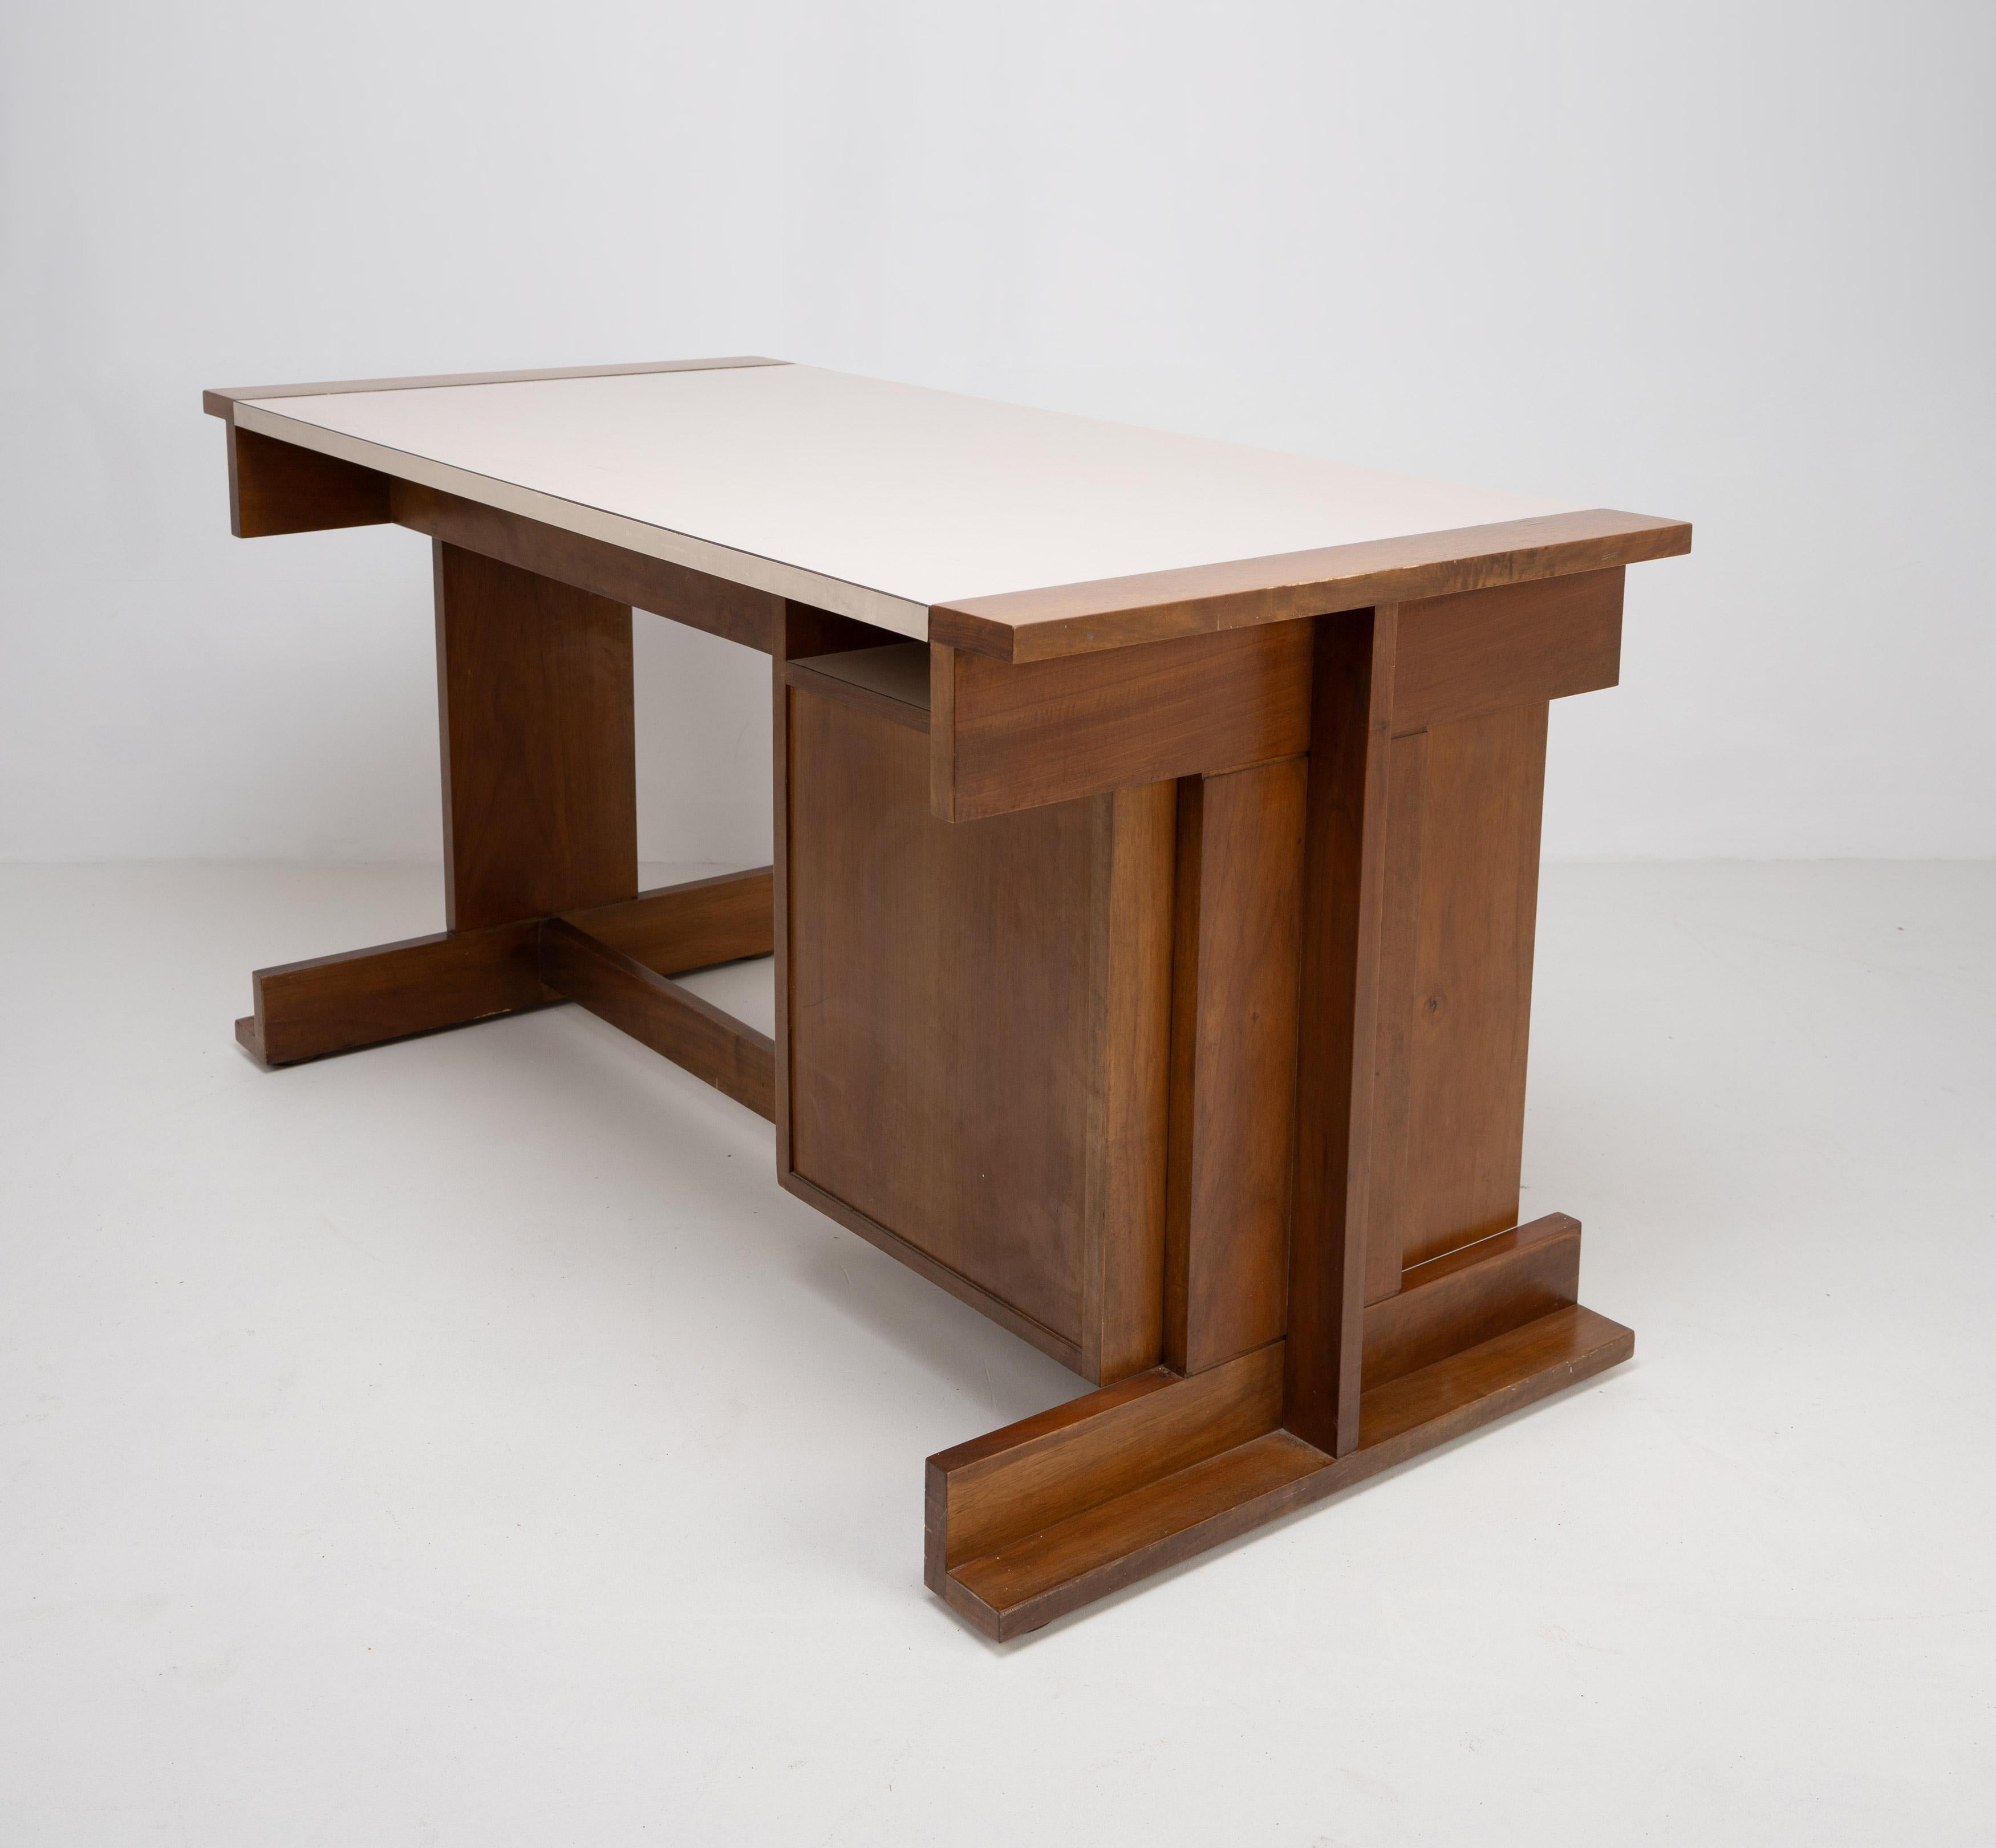 Ein italienischer Schreibtisch aus den 1950er Jahren mit einer Reihe von 4 Schubladen, einer breiteren Schublade und einer cremeweißen Melaminplatte, die von zwei geometrischen H-Rahmen getragen wird. 

Abmessungen (cm, ca.):
Höhe: 74,5
Breite: